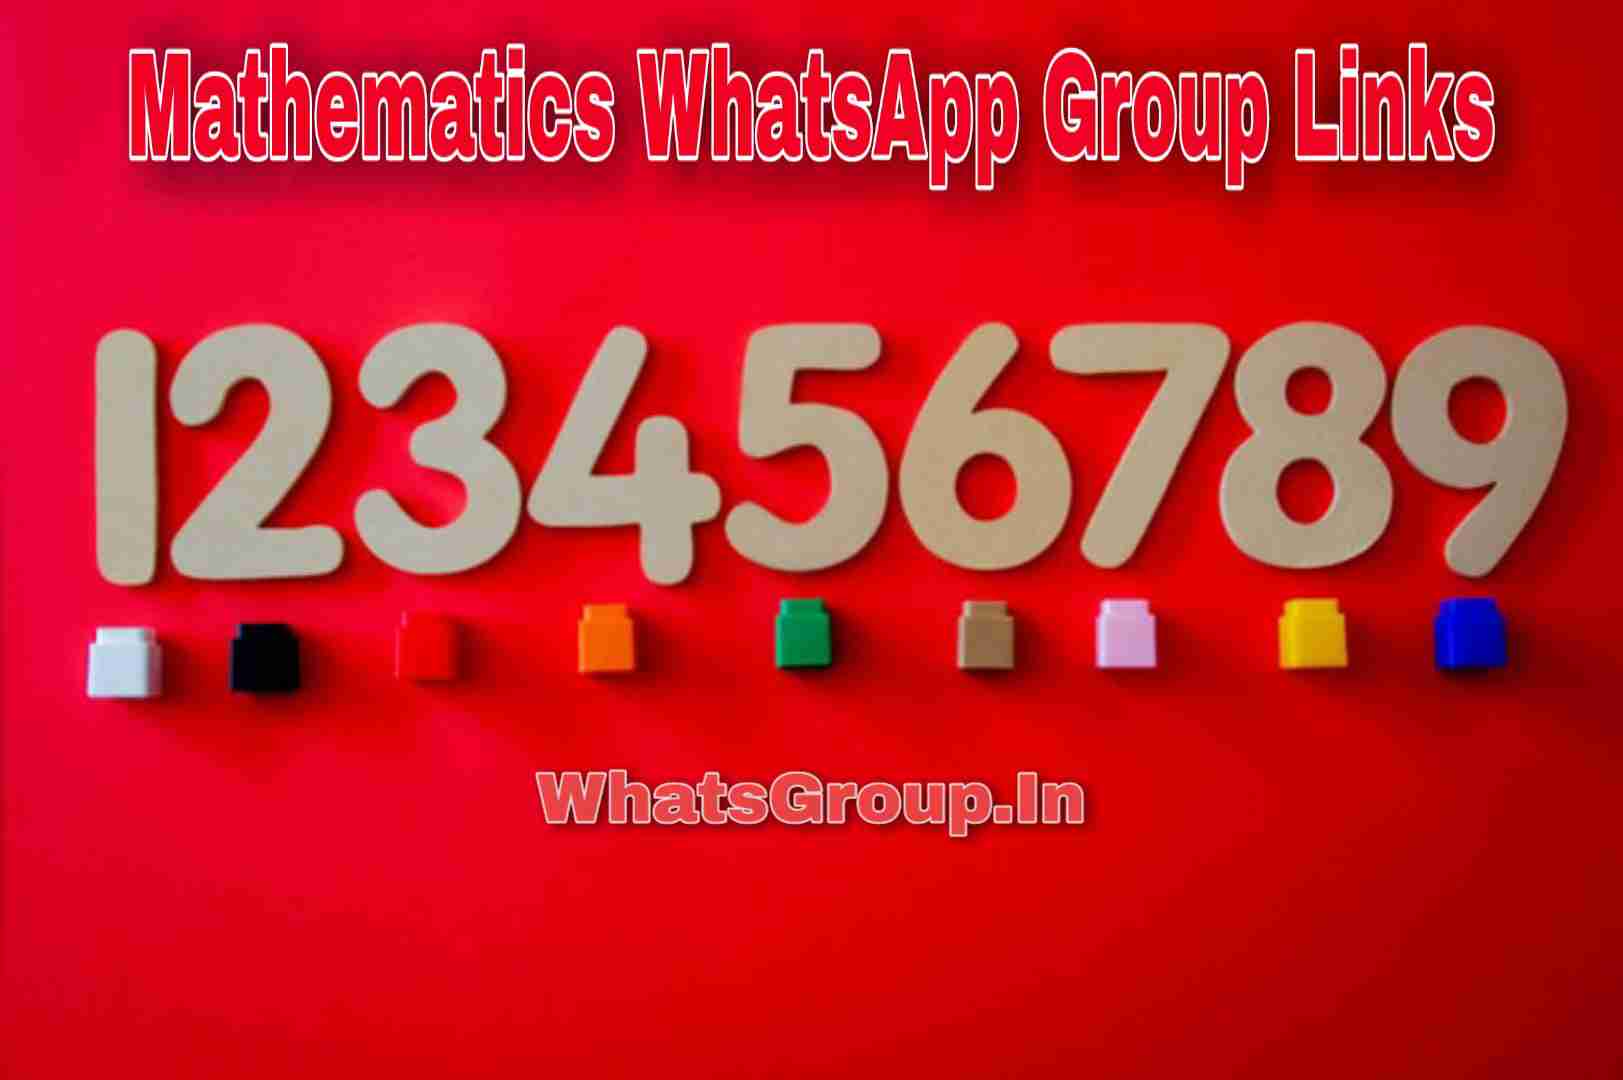 Mathematics WhatsApp Group Links